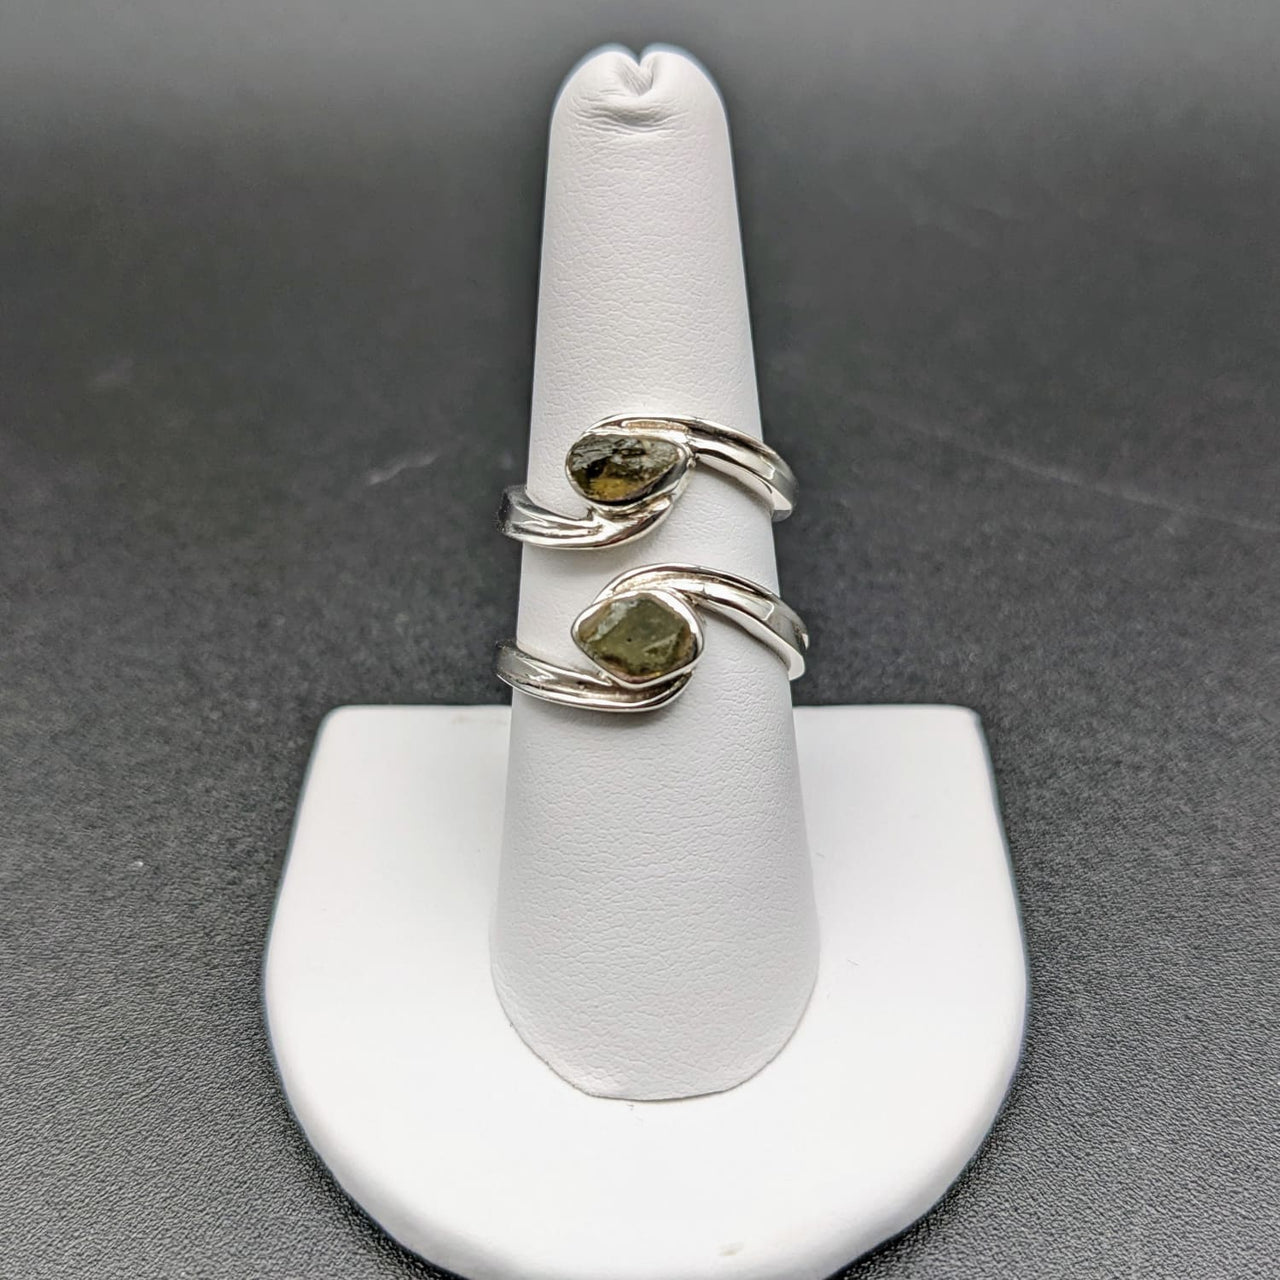 1 Moldavite Sterling Silver Swoop Ring #SK2626D - $125